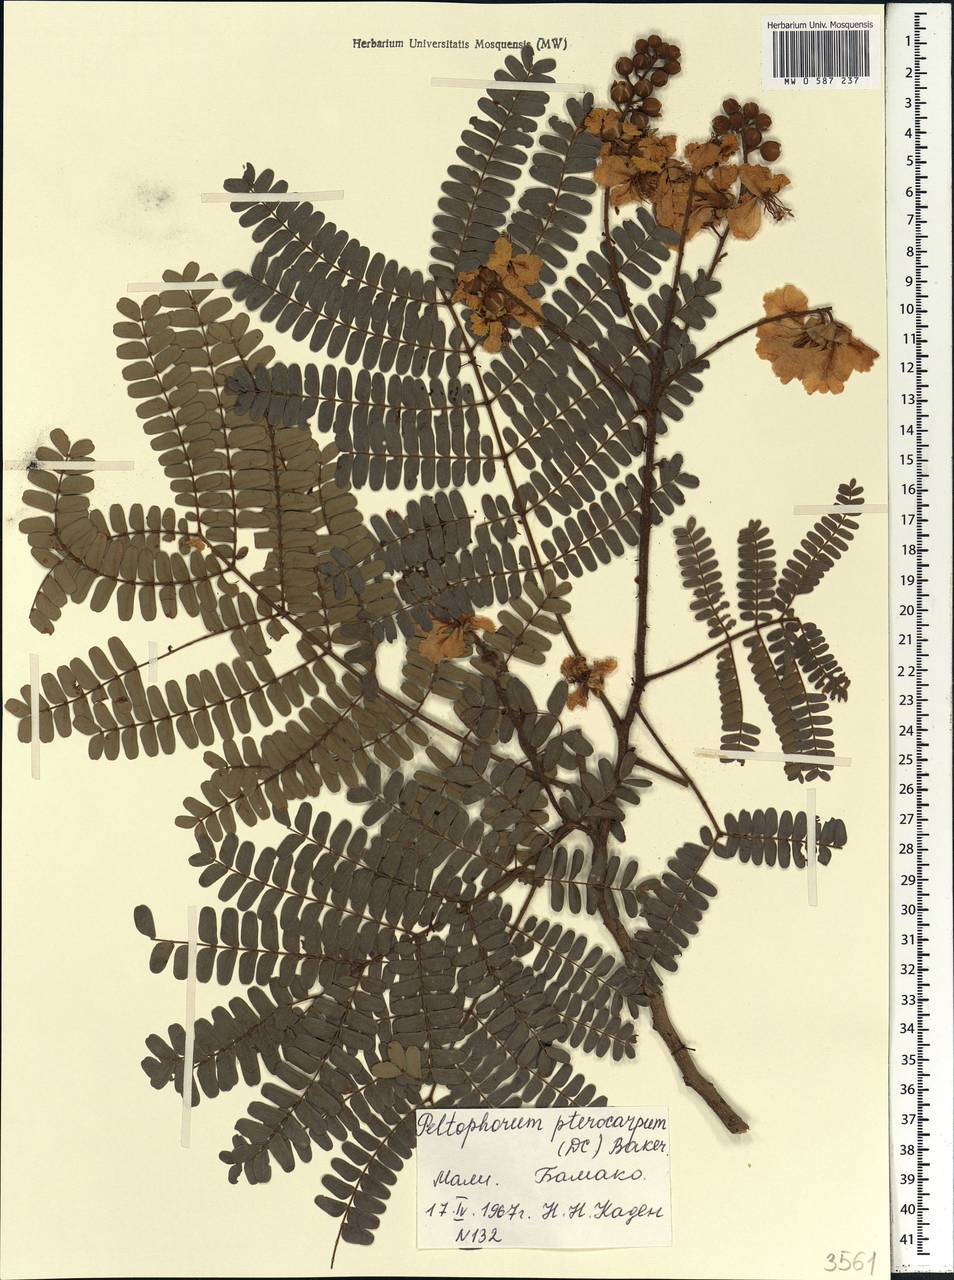 Peltophorum pterocarpum (DC.)K.Heyne, Африка (AFR) (Мали)